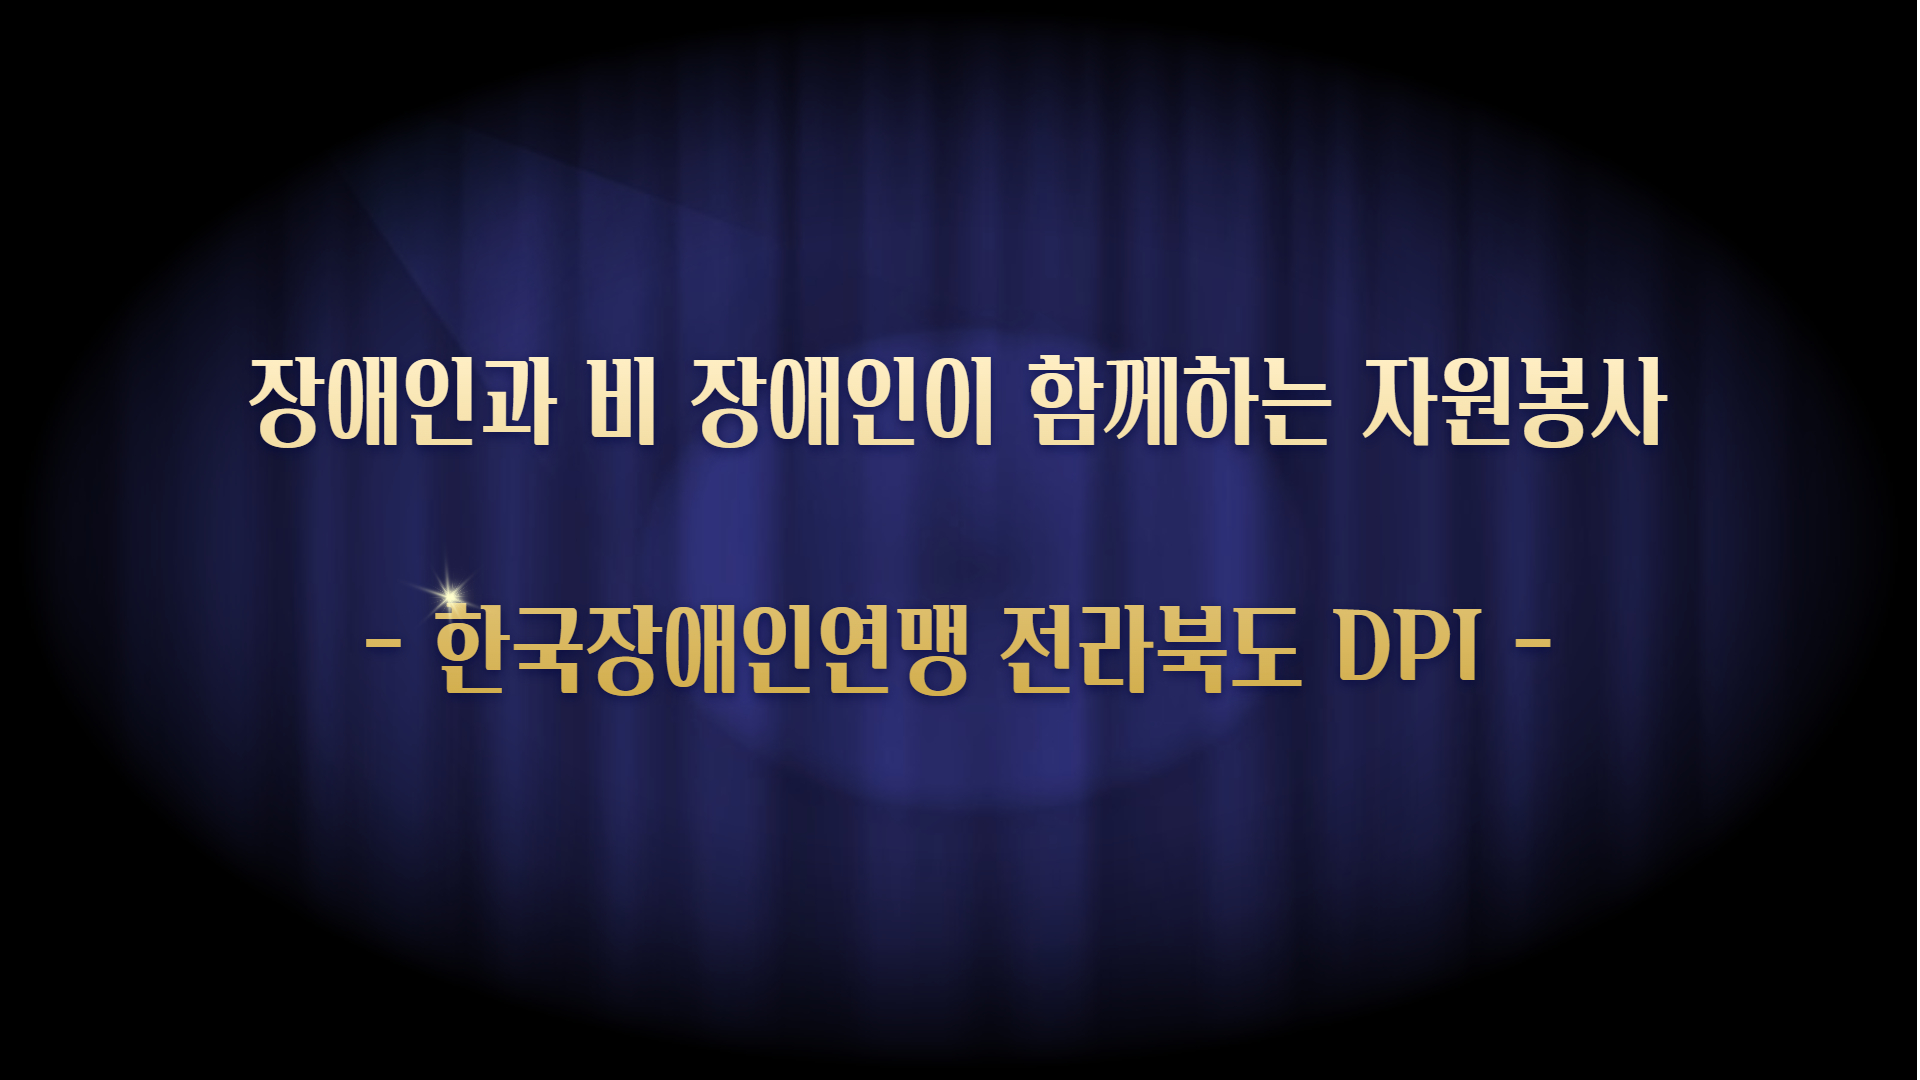 11. 한국장애인연맹 전라북도DPI